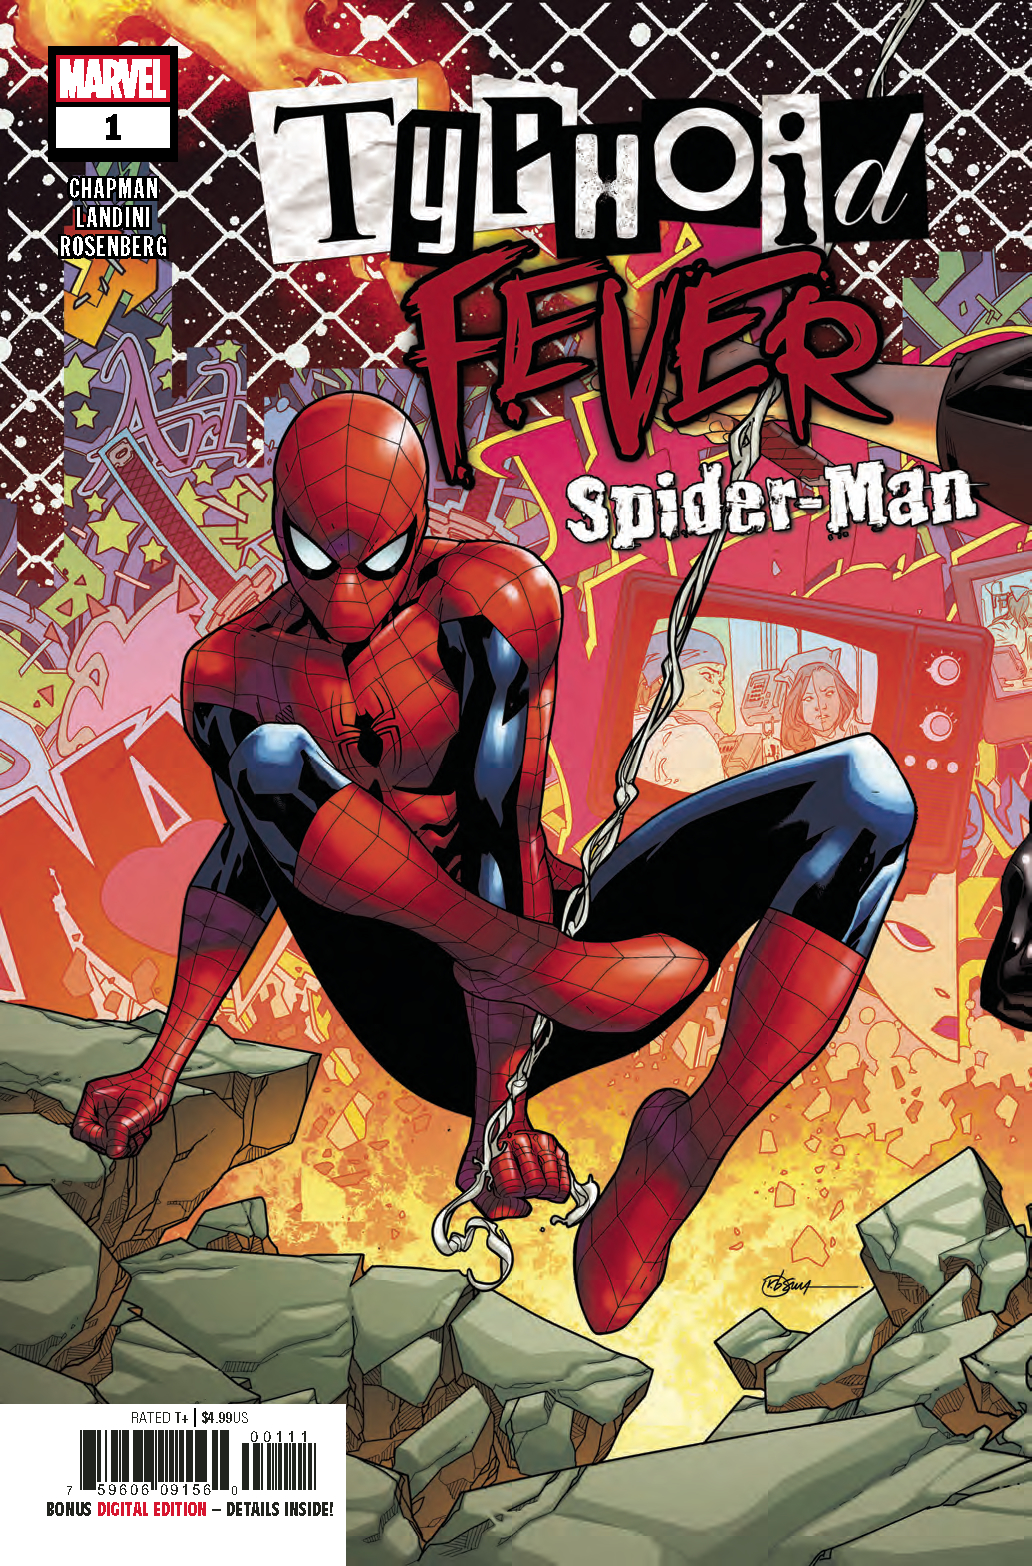 TYPHOID FEVER SPIDER-MAN #1